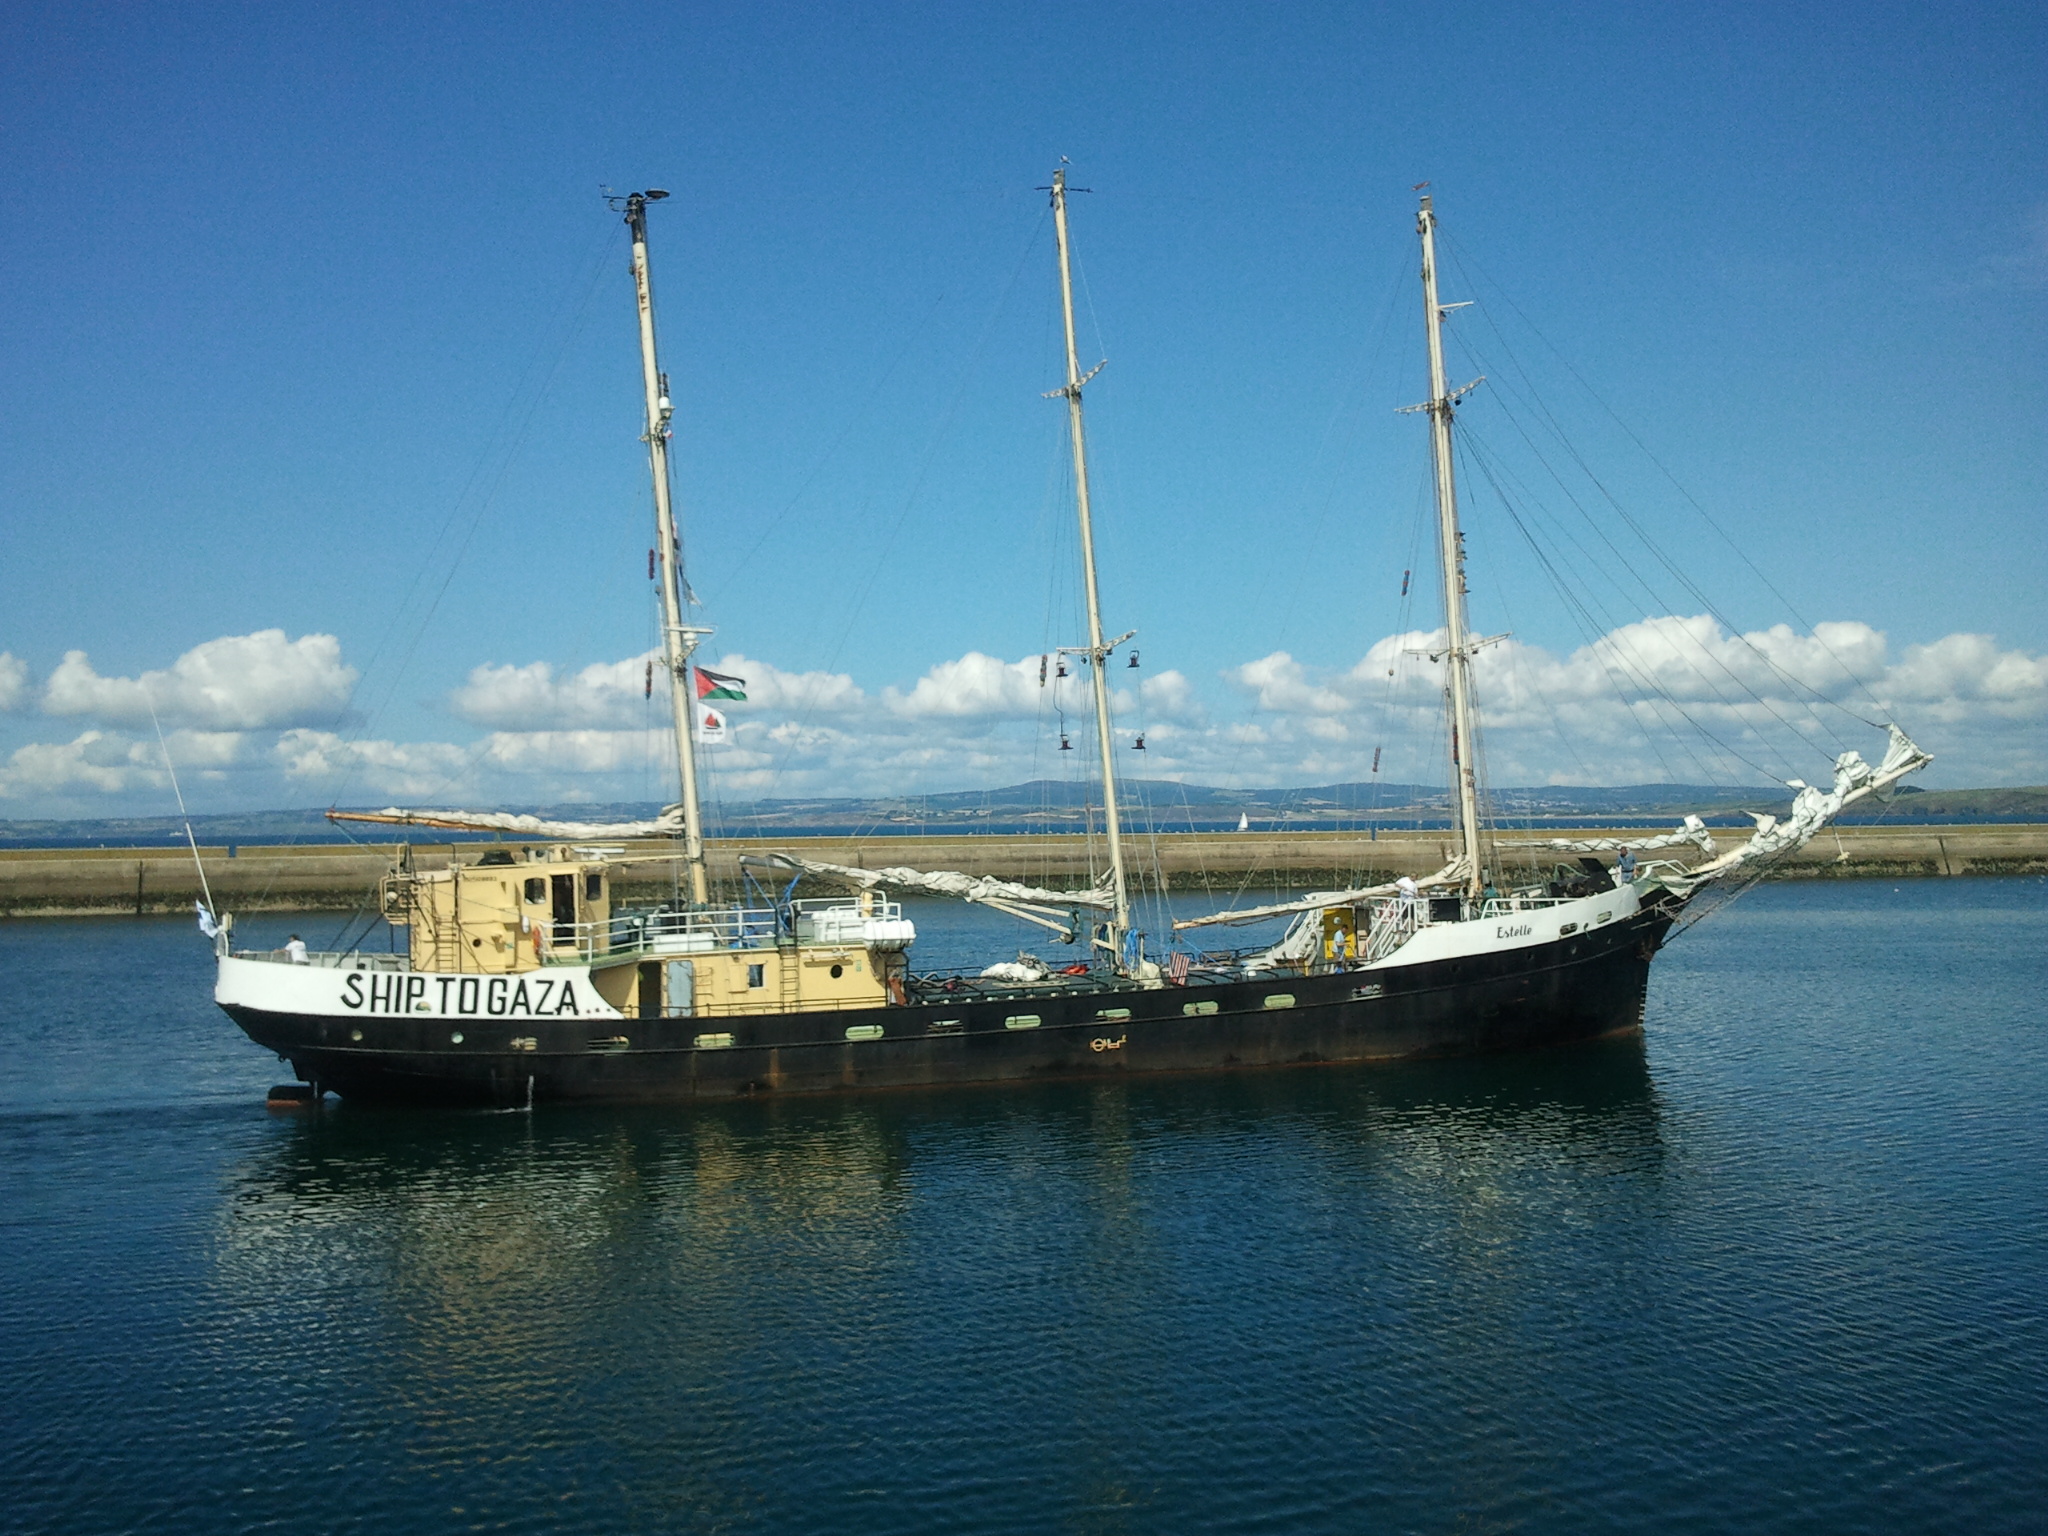 L'Estelle au port de Rosmeur - Douarnenez le 20-08-2012